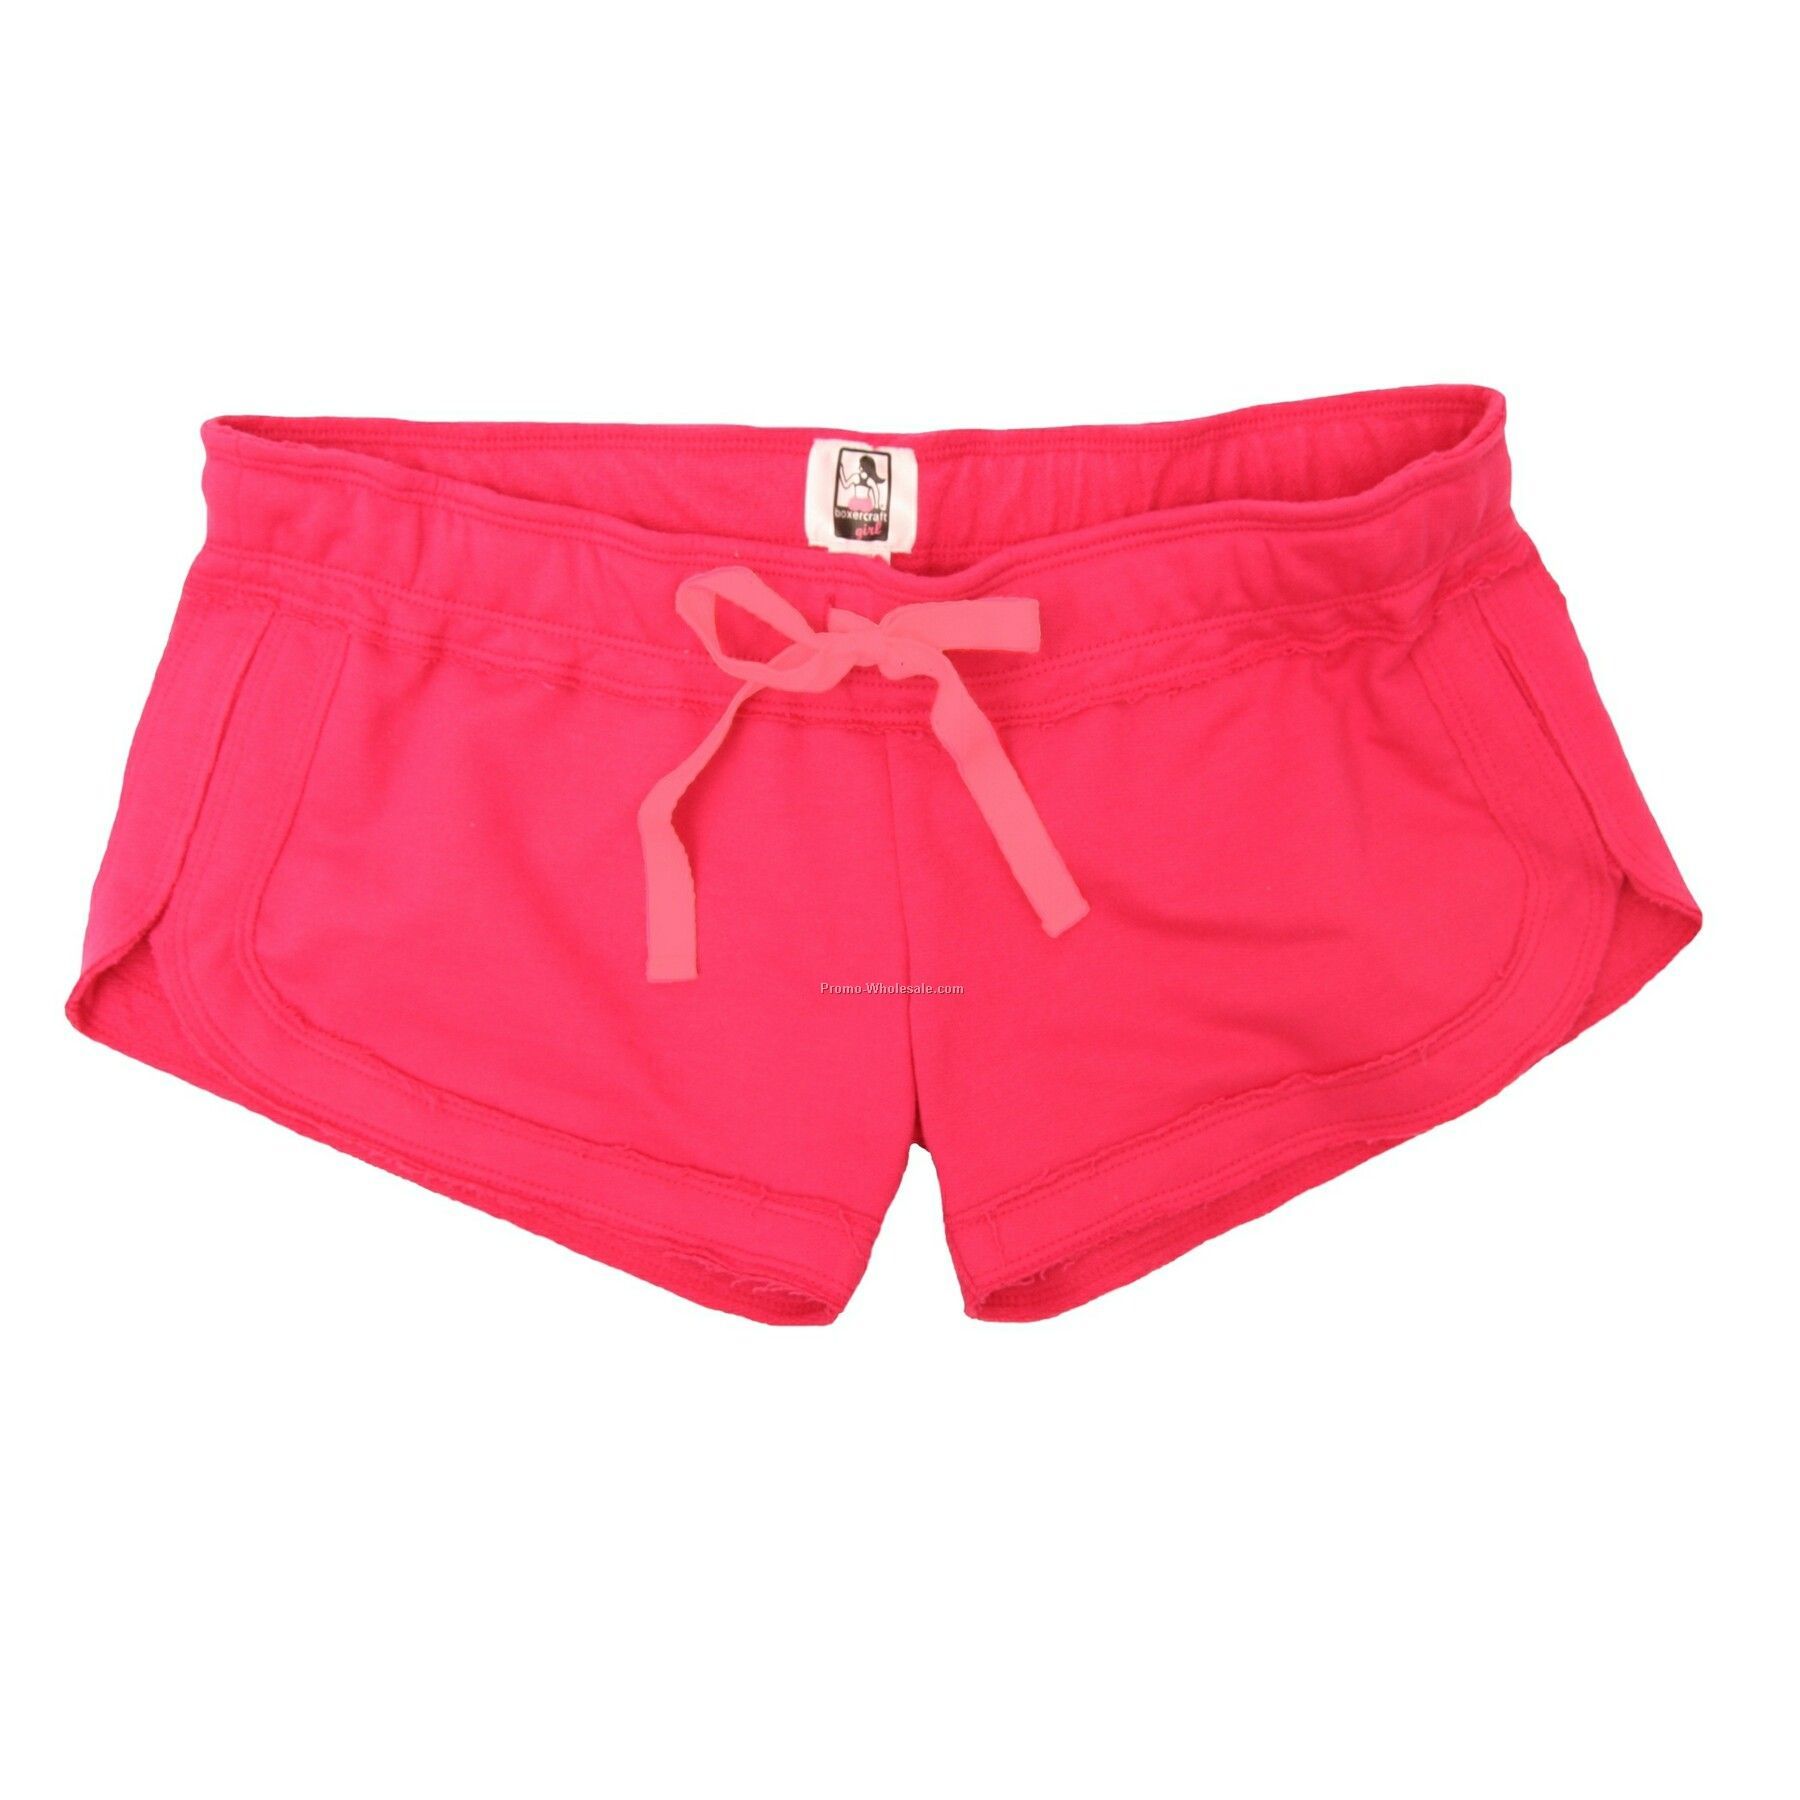 Adults' Fuchsia Pink Chrissy Shorts (Xs-xl)